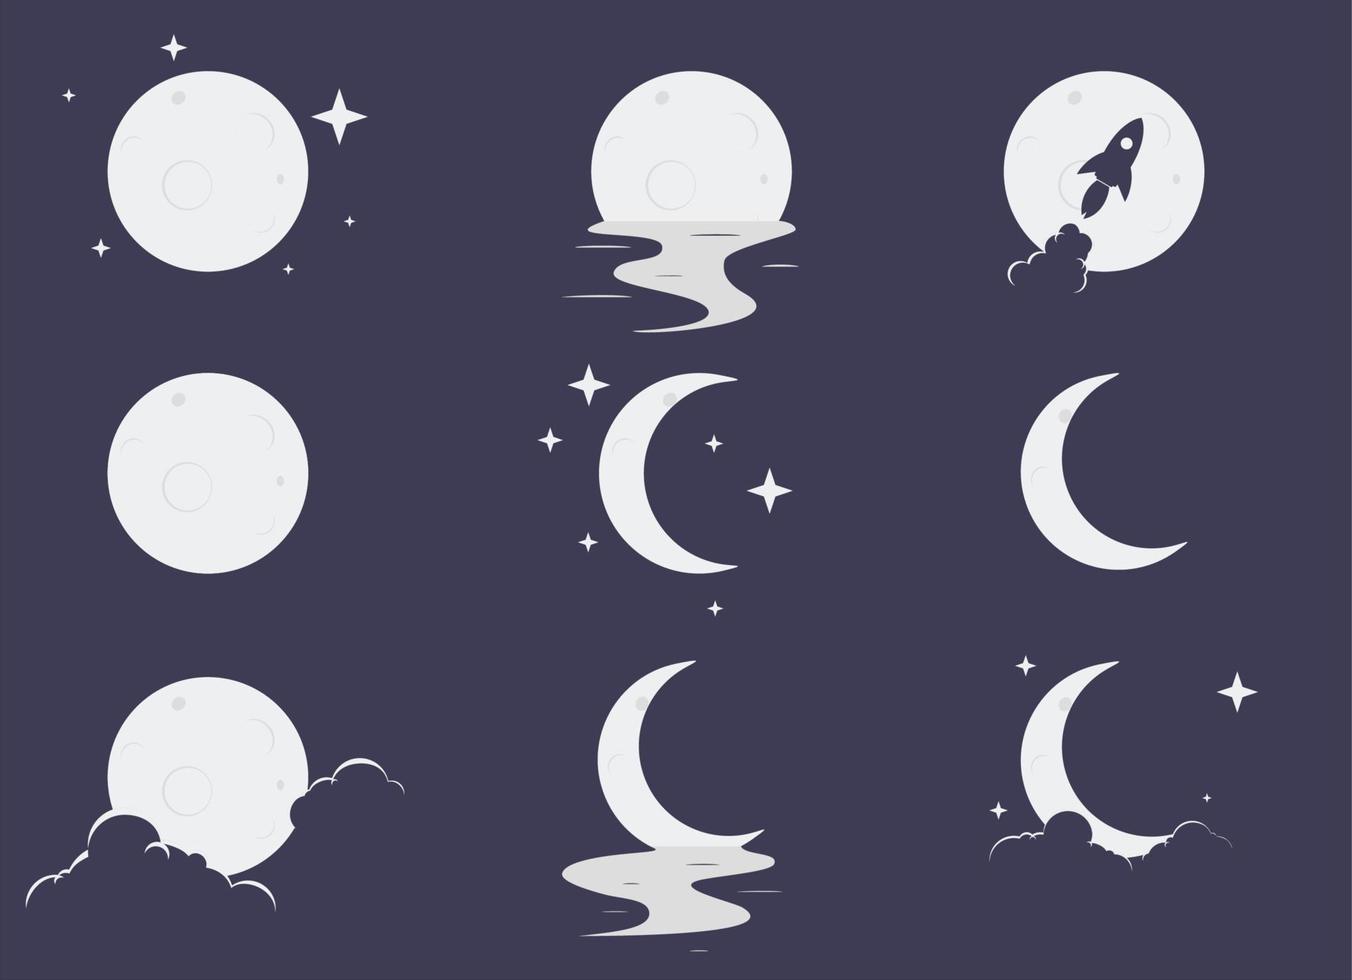 définir lune élégante avec étoile, réflexion sur l'eau, les nuages et l'icône de fusée illustration vectorielle eps10 vecteur